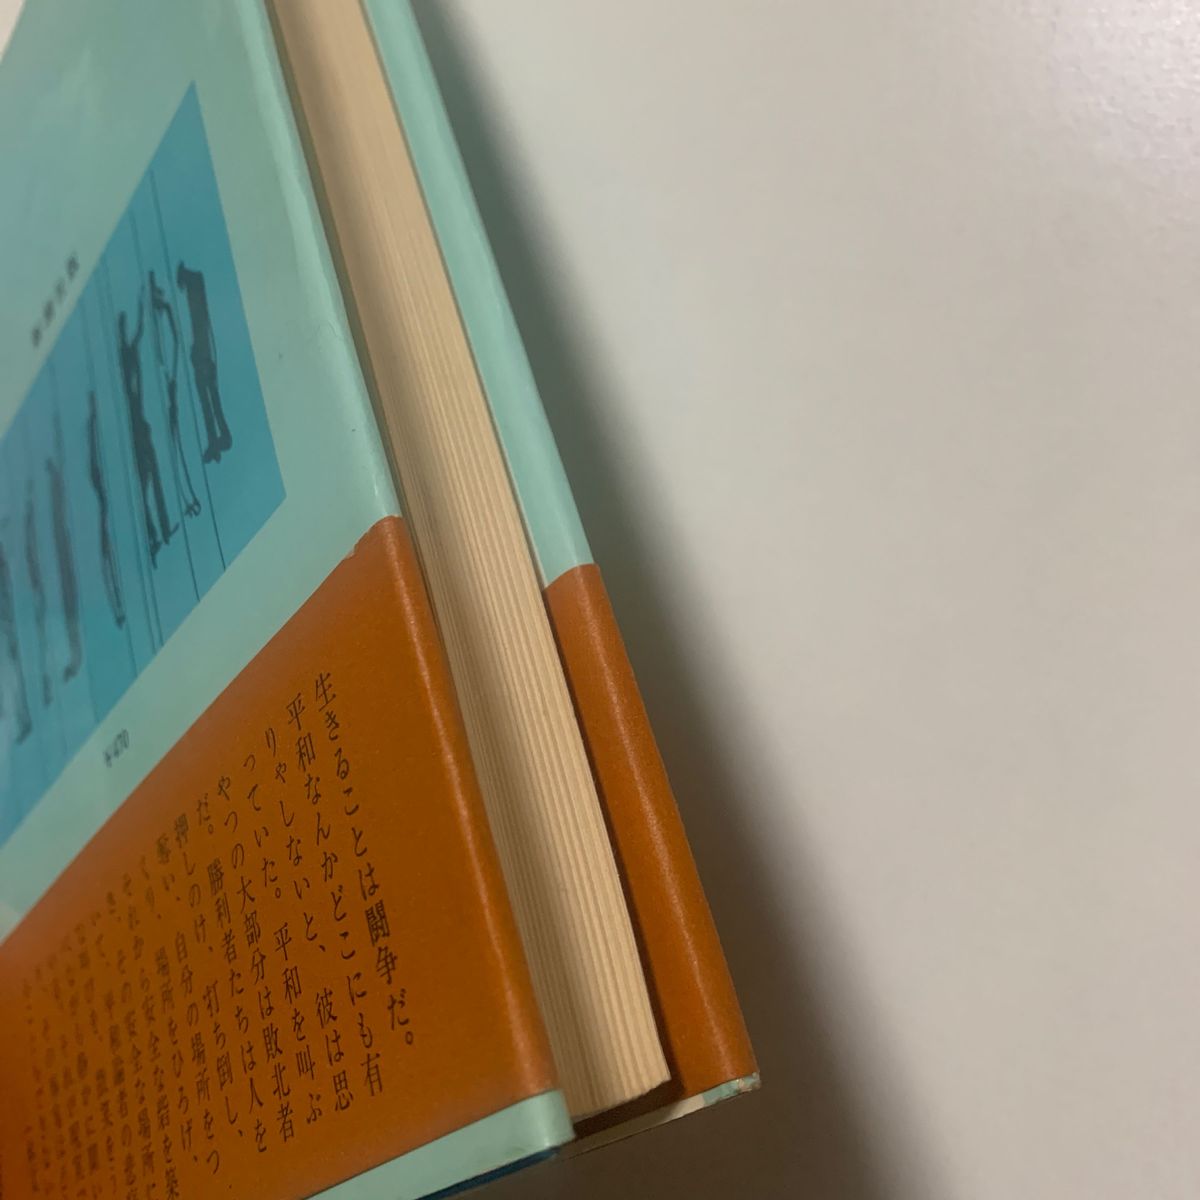 【中編小説】石川達三 「青春の蹉跌(さてつ)」新潮社版  帯付 映画化作品